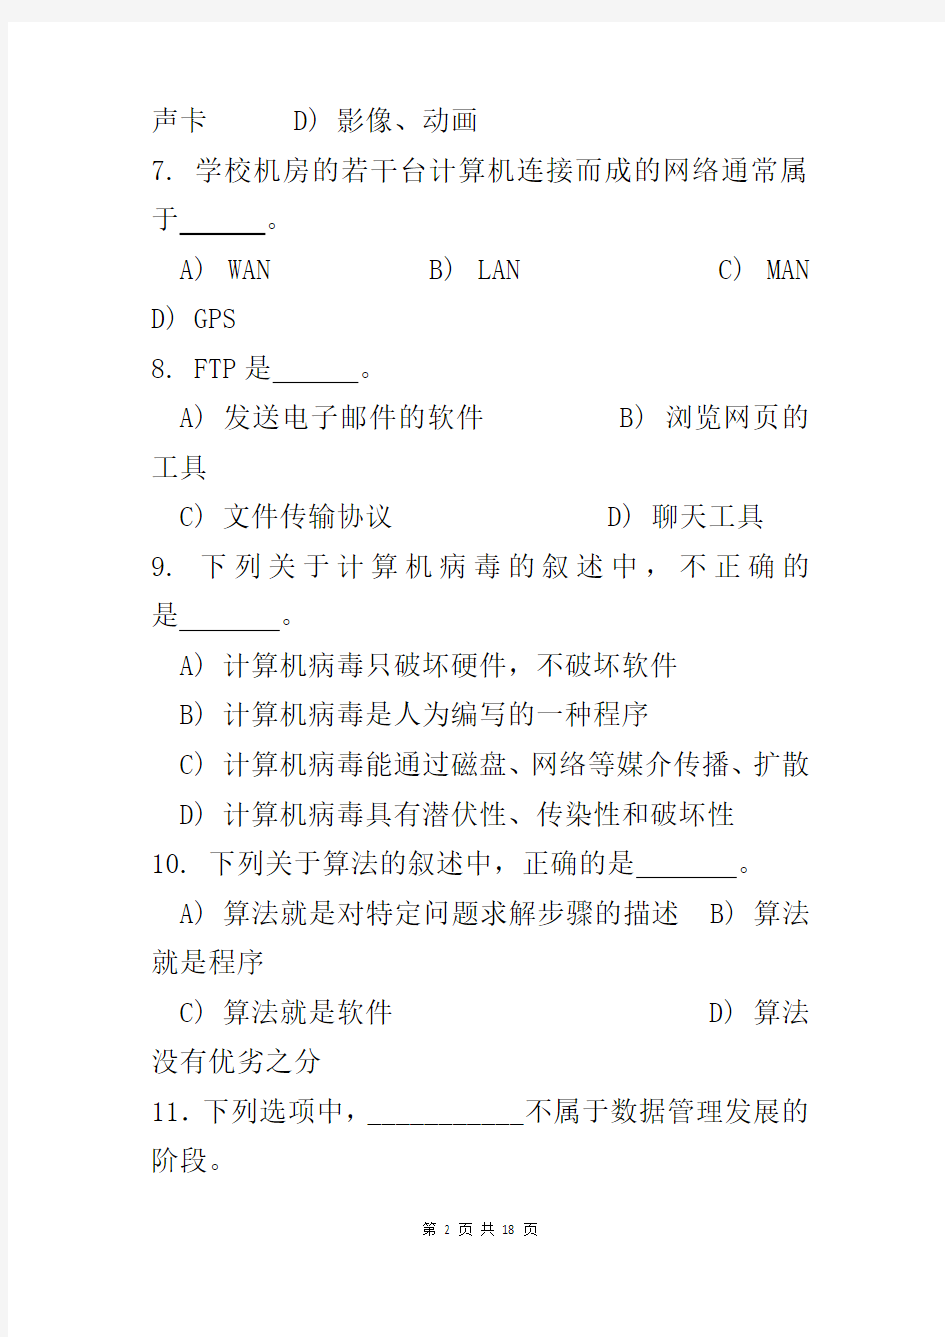 安徽省计算机二级VFP考试理论模拟试题2(附答案)!!!!!!!!